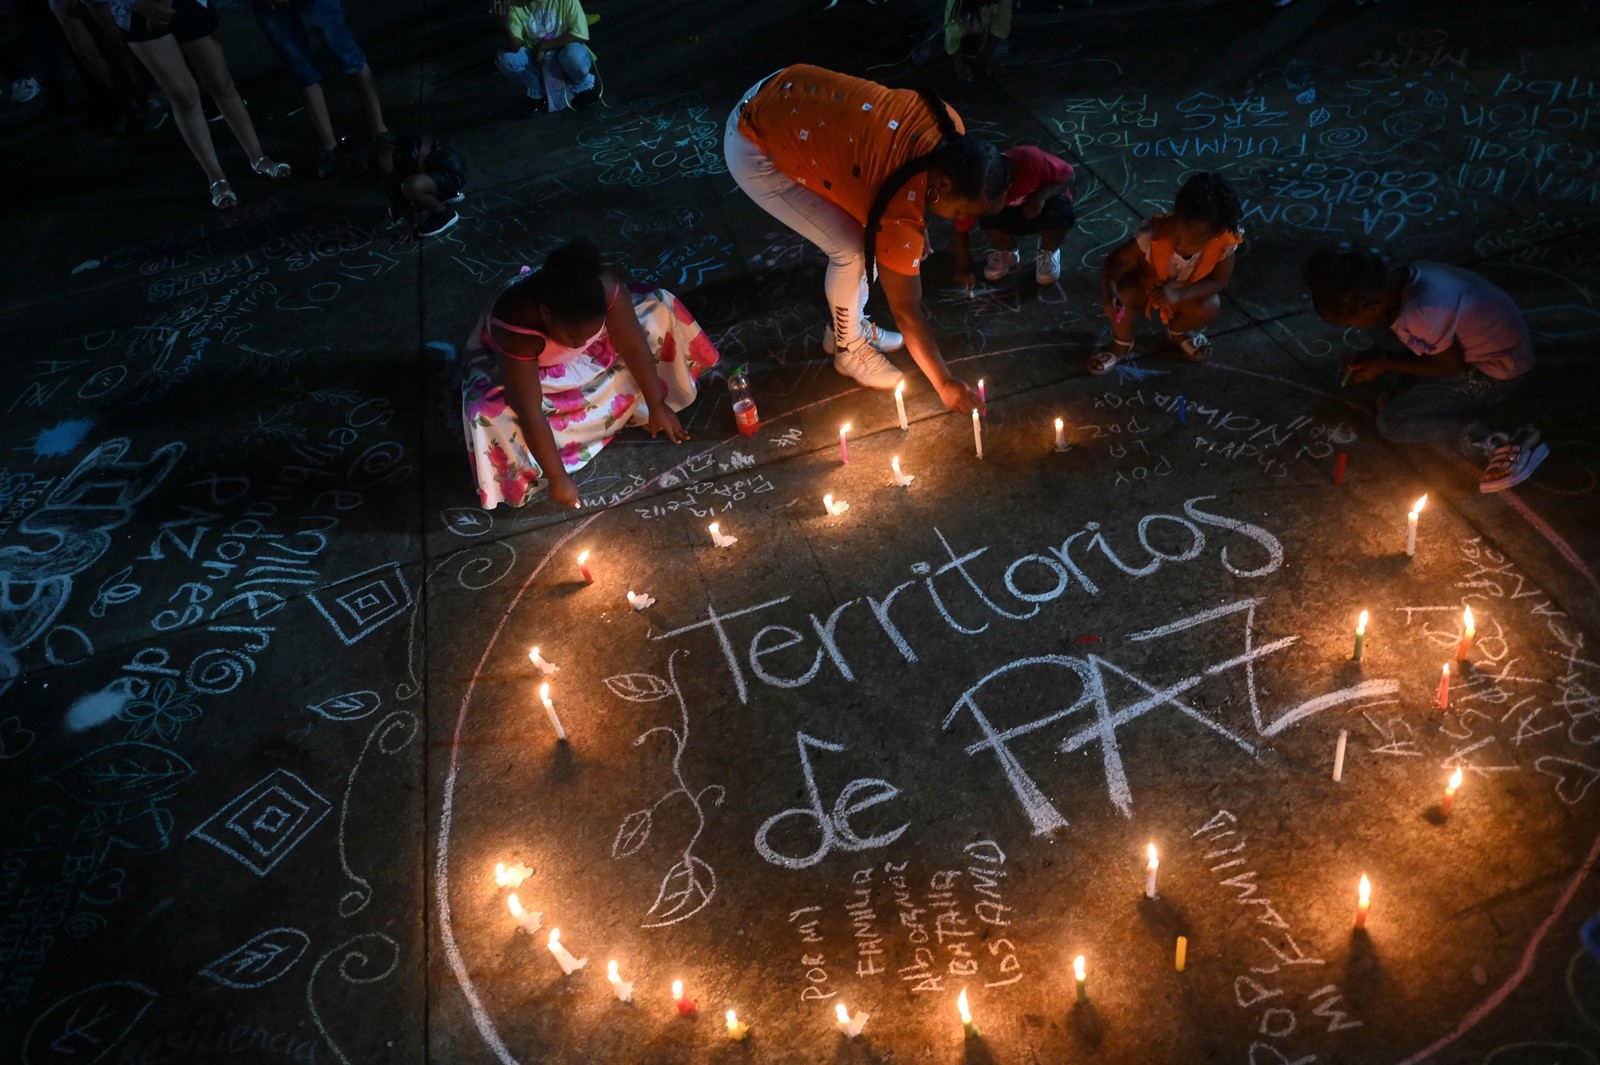 Pessoas acendem velas para comemorar o andamento do processo de paz local durante a noite das velas, em Buenaventura, Colômbia — Foto: JOAQUIN SARMIENTO/AFP